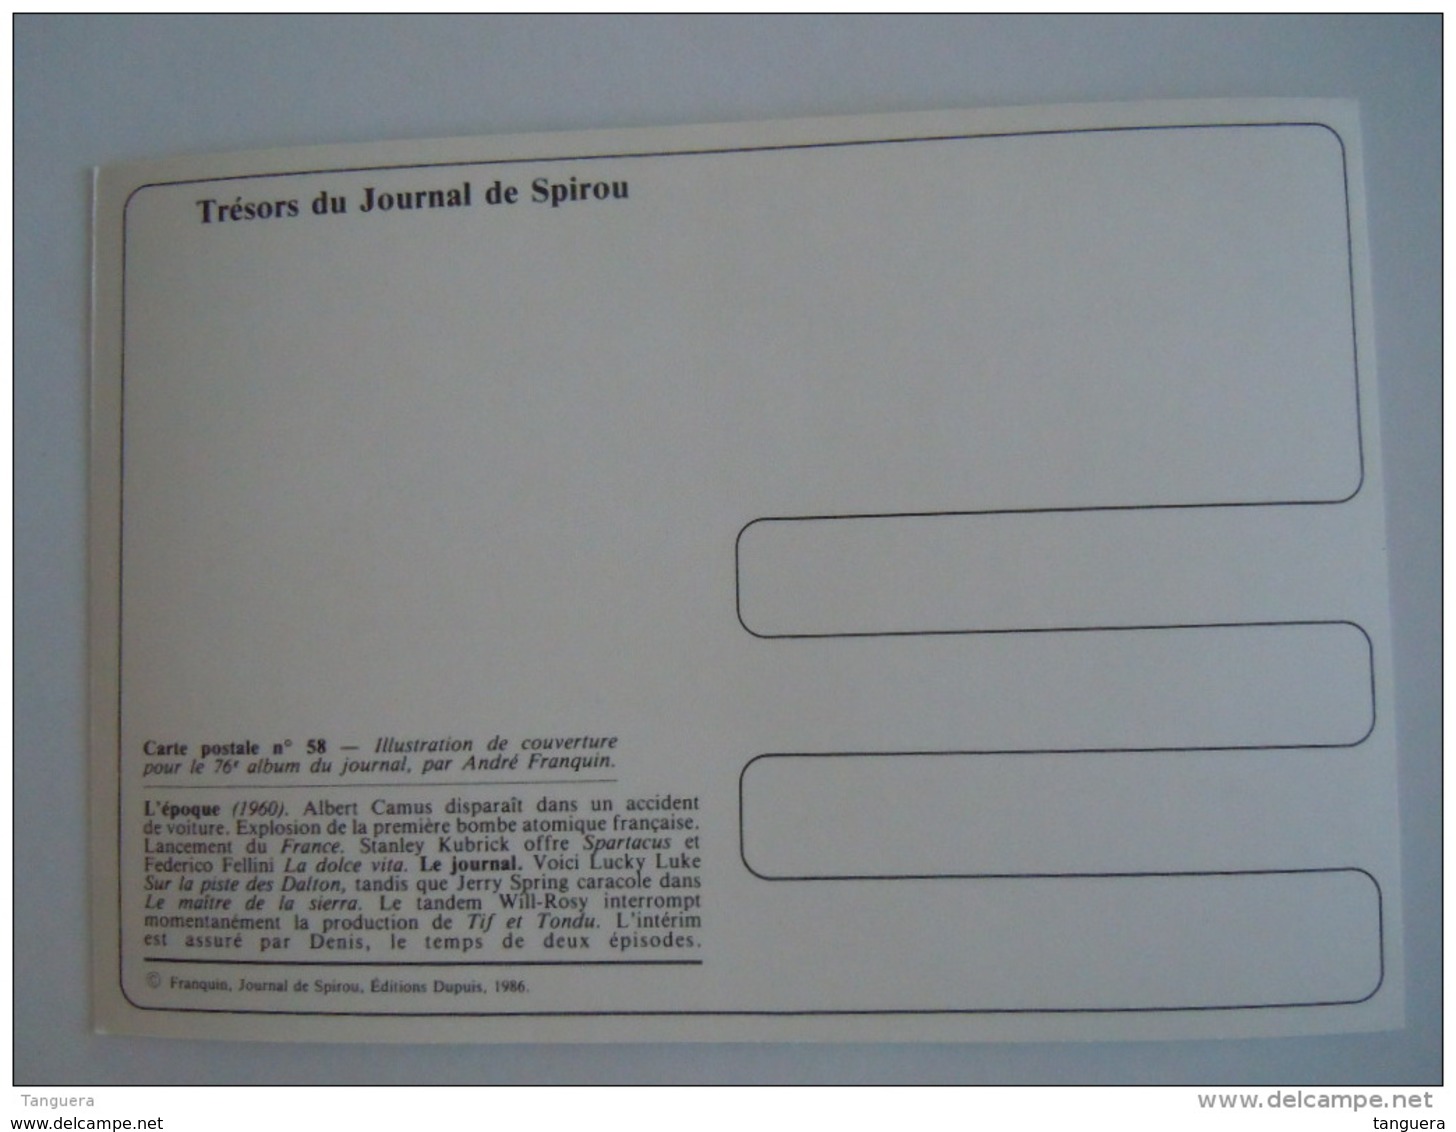 1986 Trésors Du Journal De Spirou Carte Postale 58 Illustration  Couverture Pour Le 76é Album Du Journal André Franquin - Comics